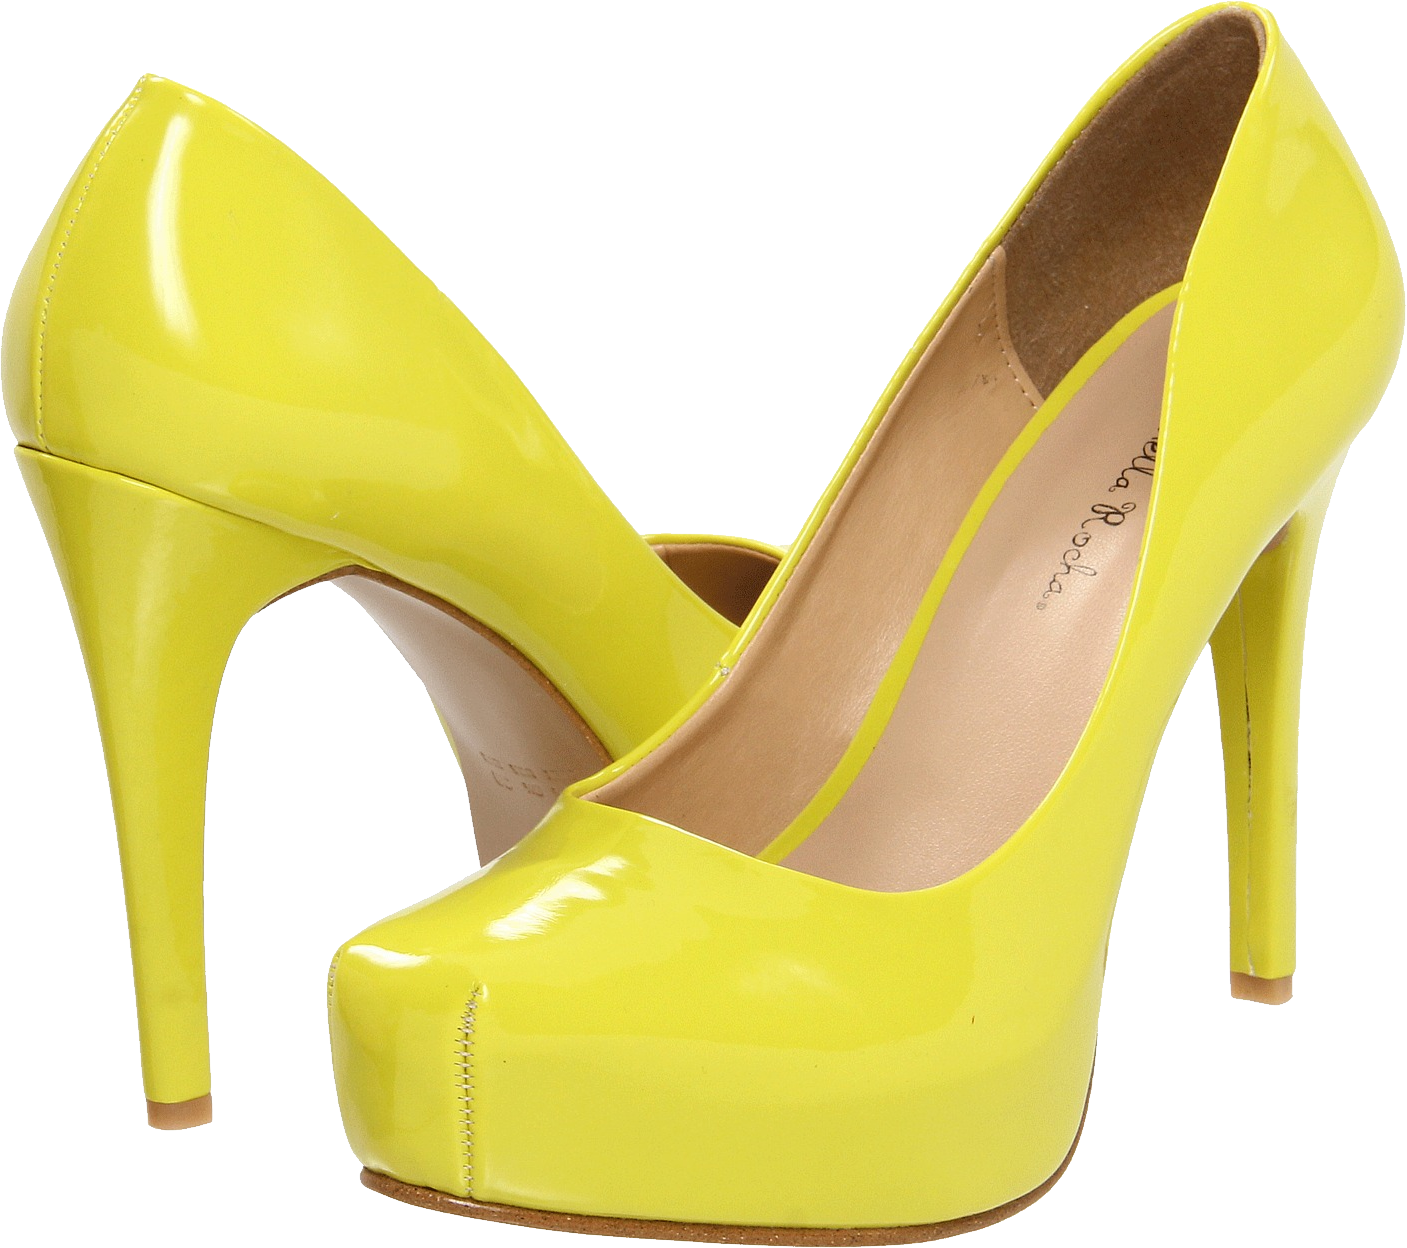 Sapatos femininos amarelos